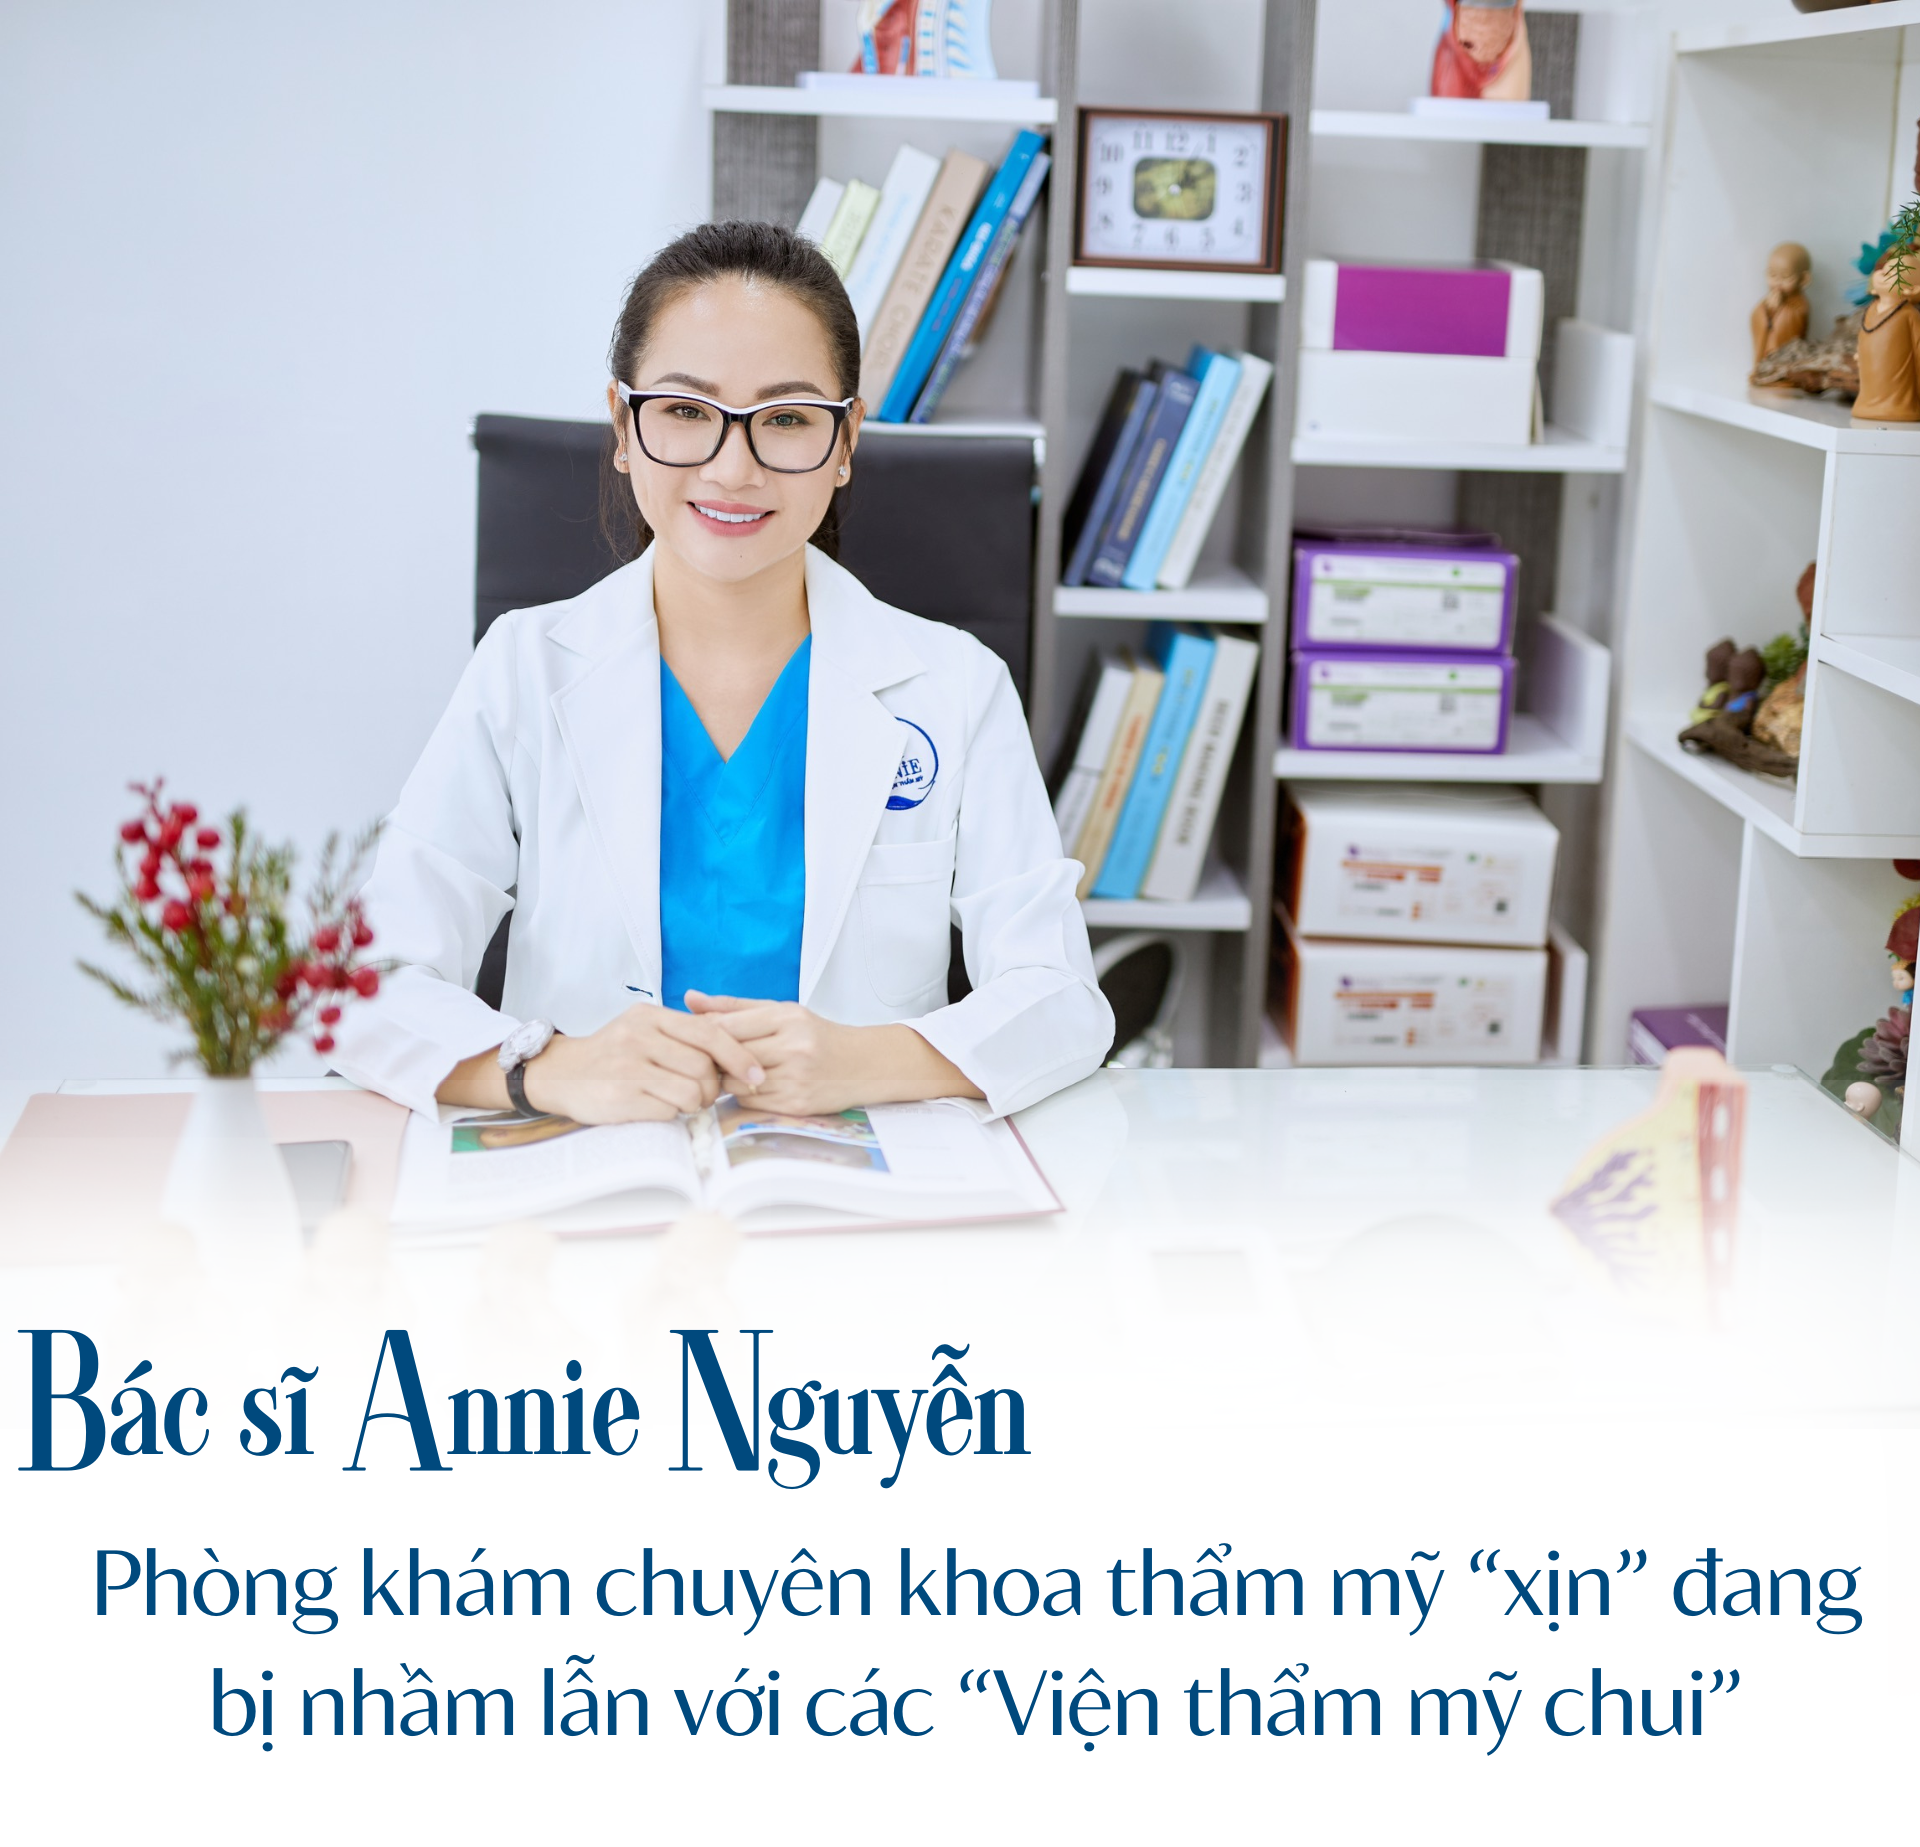 Bác sĩ Annie Nguyễn: Phòng khám chuyên khoa thẩm mỹ “xịn” đang bị nhầm lẫn với các “Viện thẩm mỹ chui”